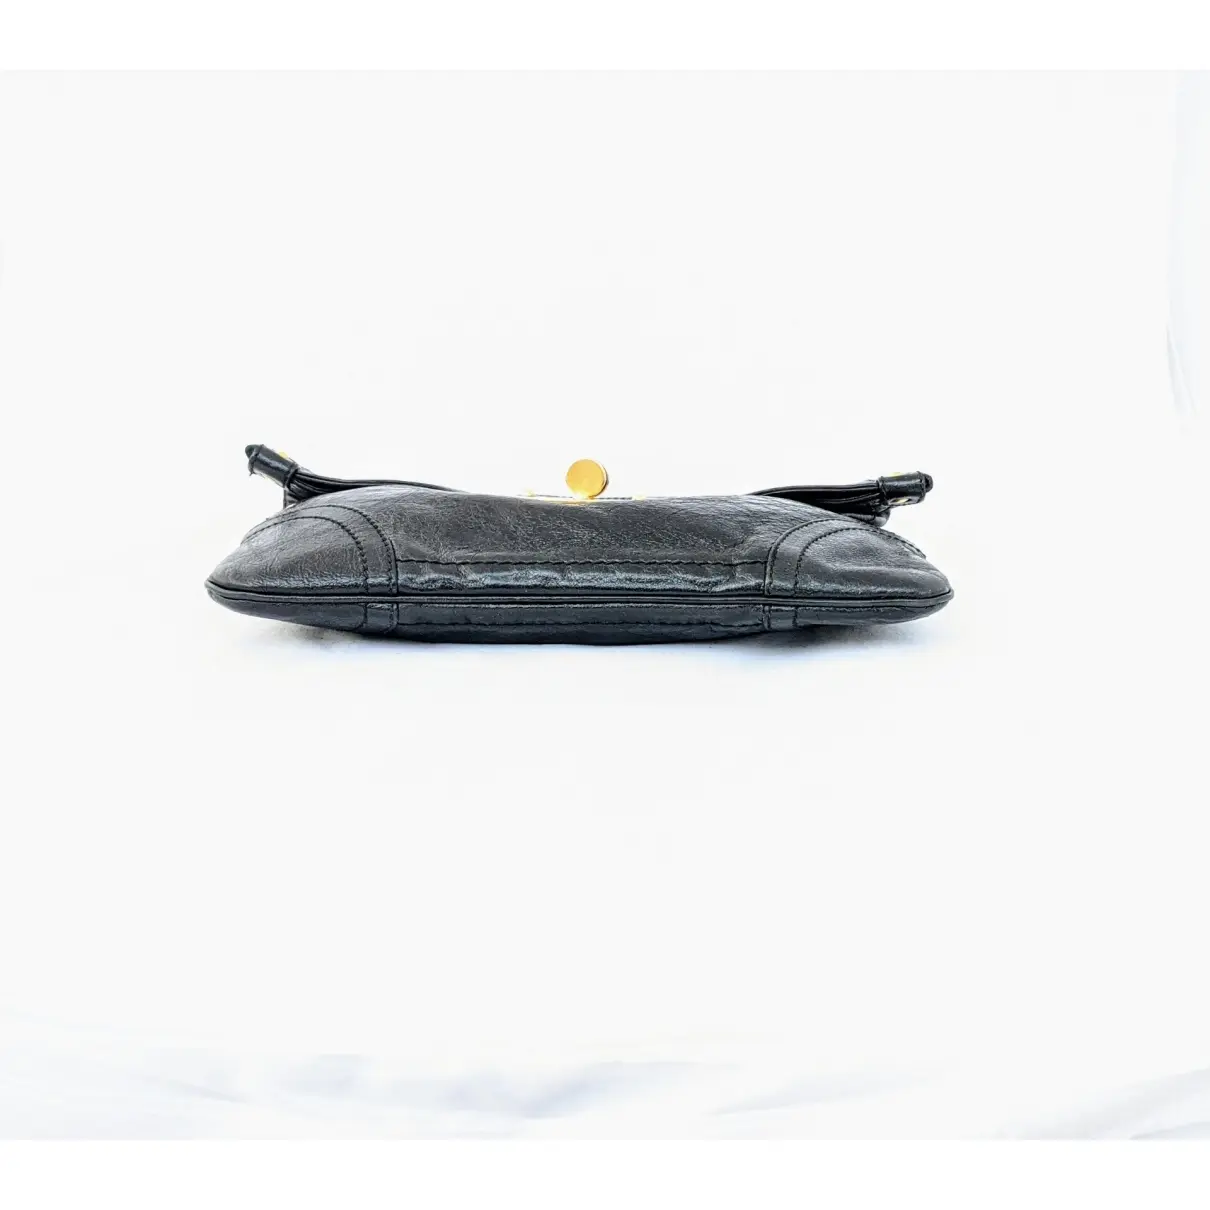 Leather clutch bag Alexander McQueen